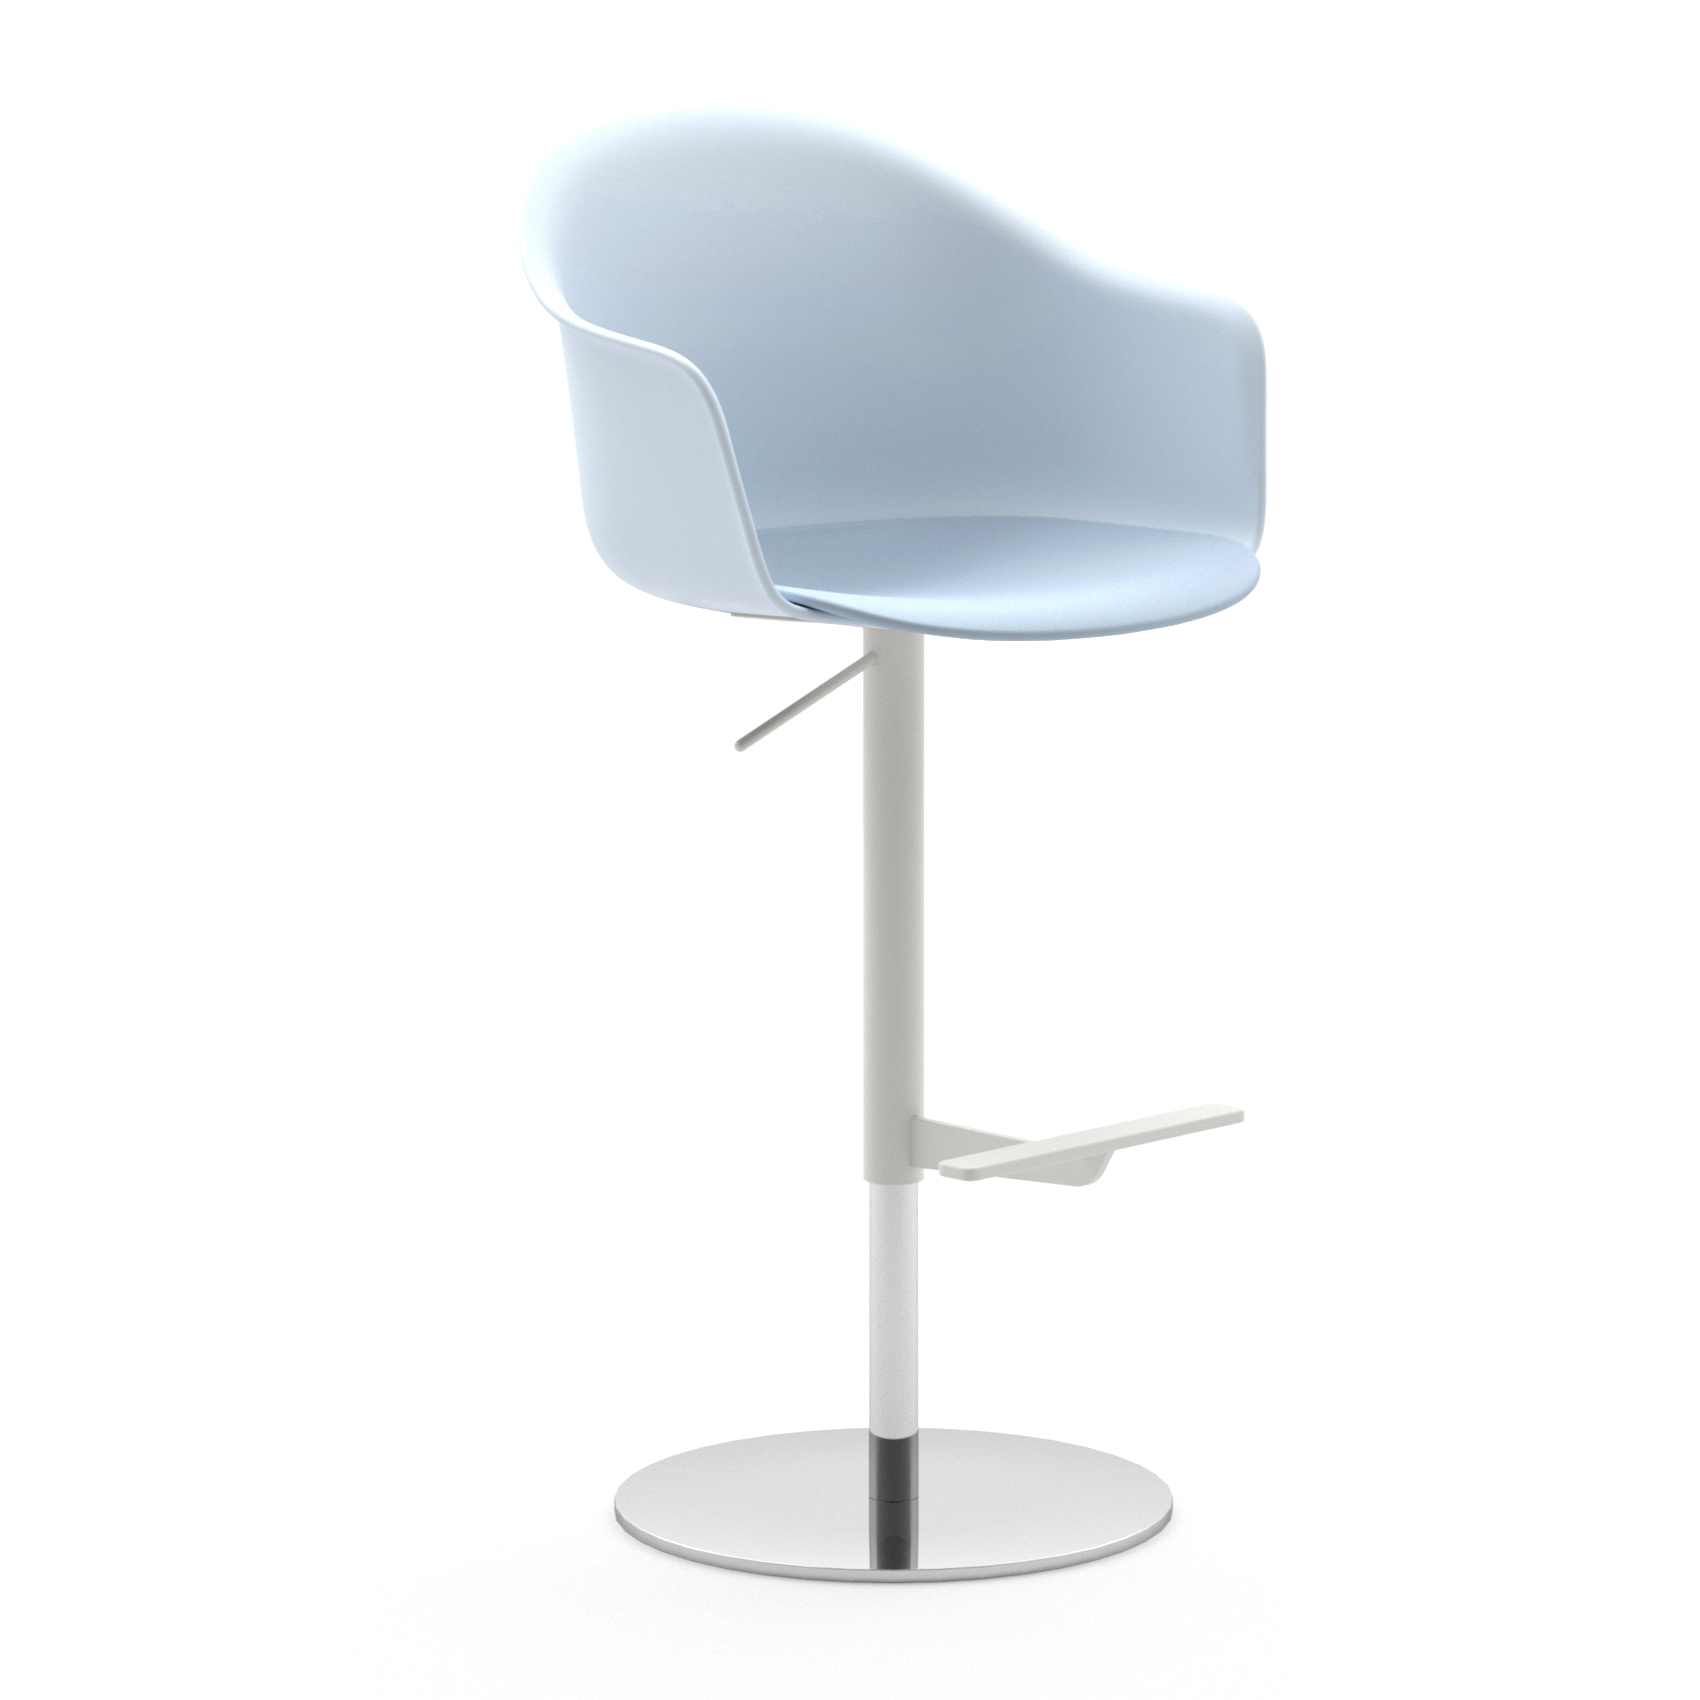 MANI PLASTIC adjustable stool